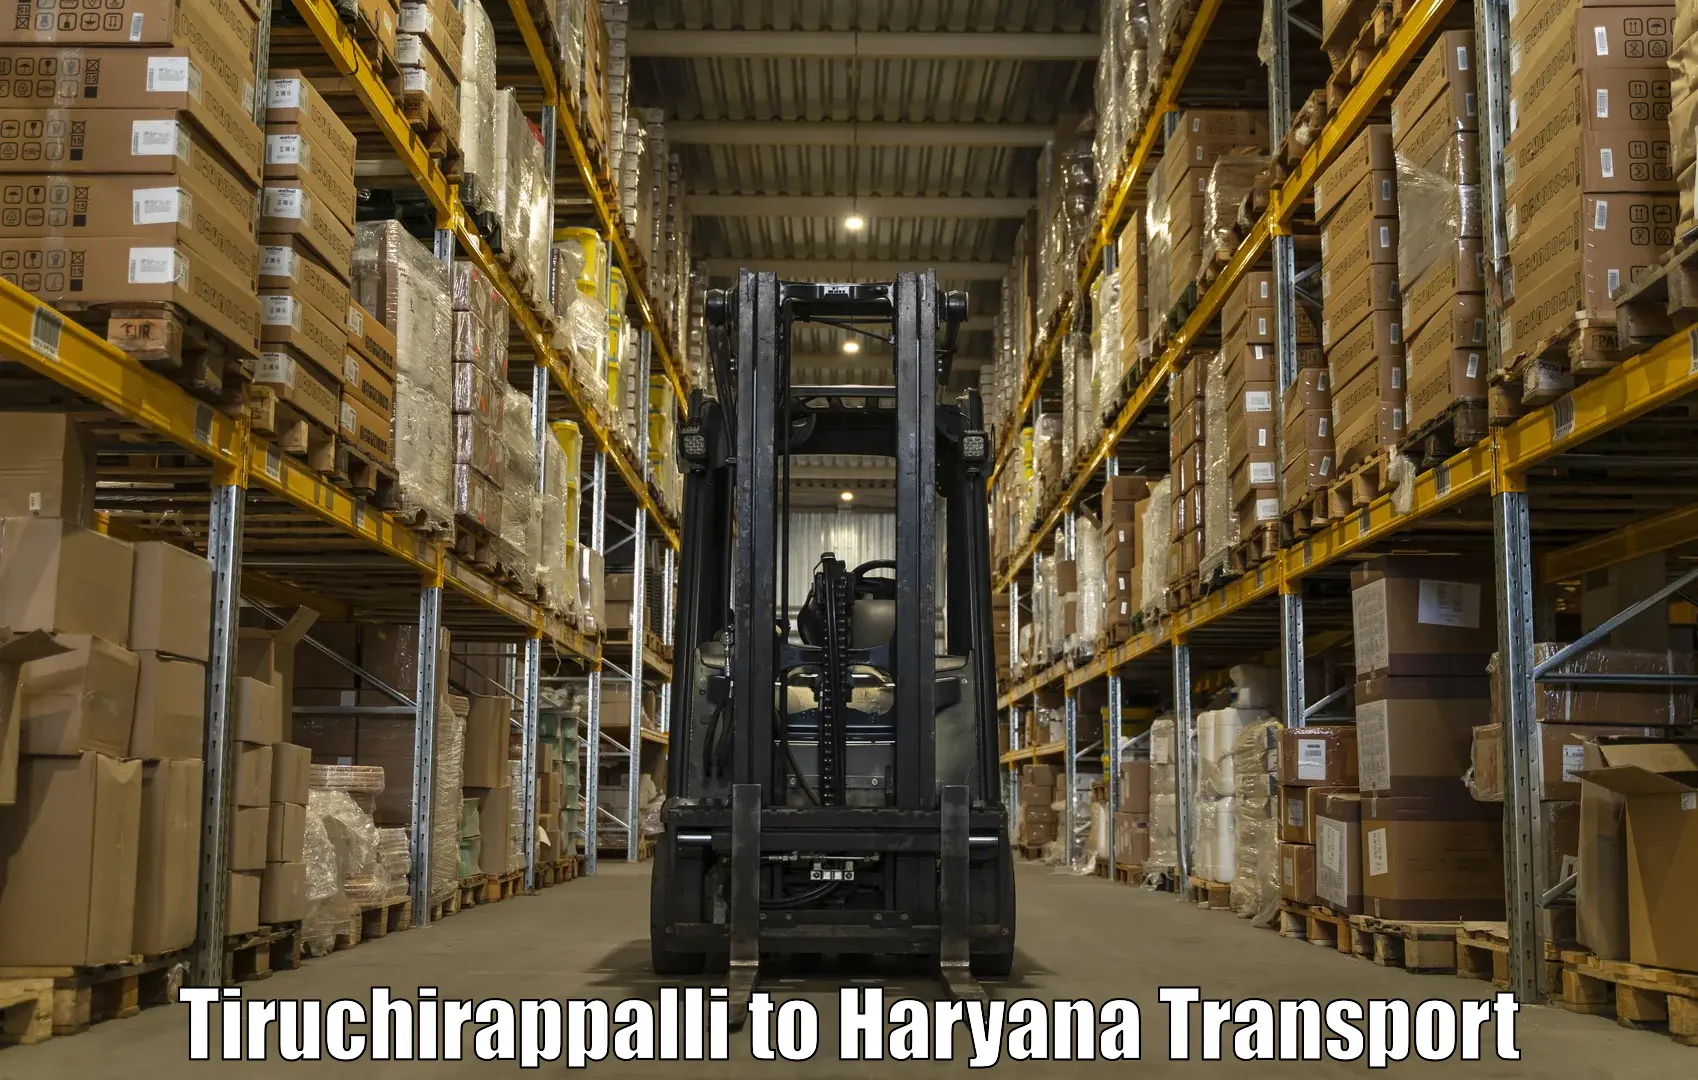 Daily parcel service transport Tiruchirappalli to Panchkula